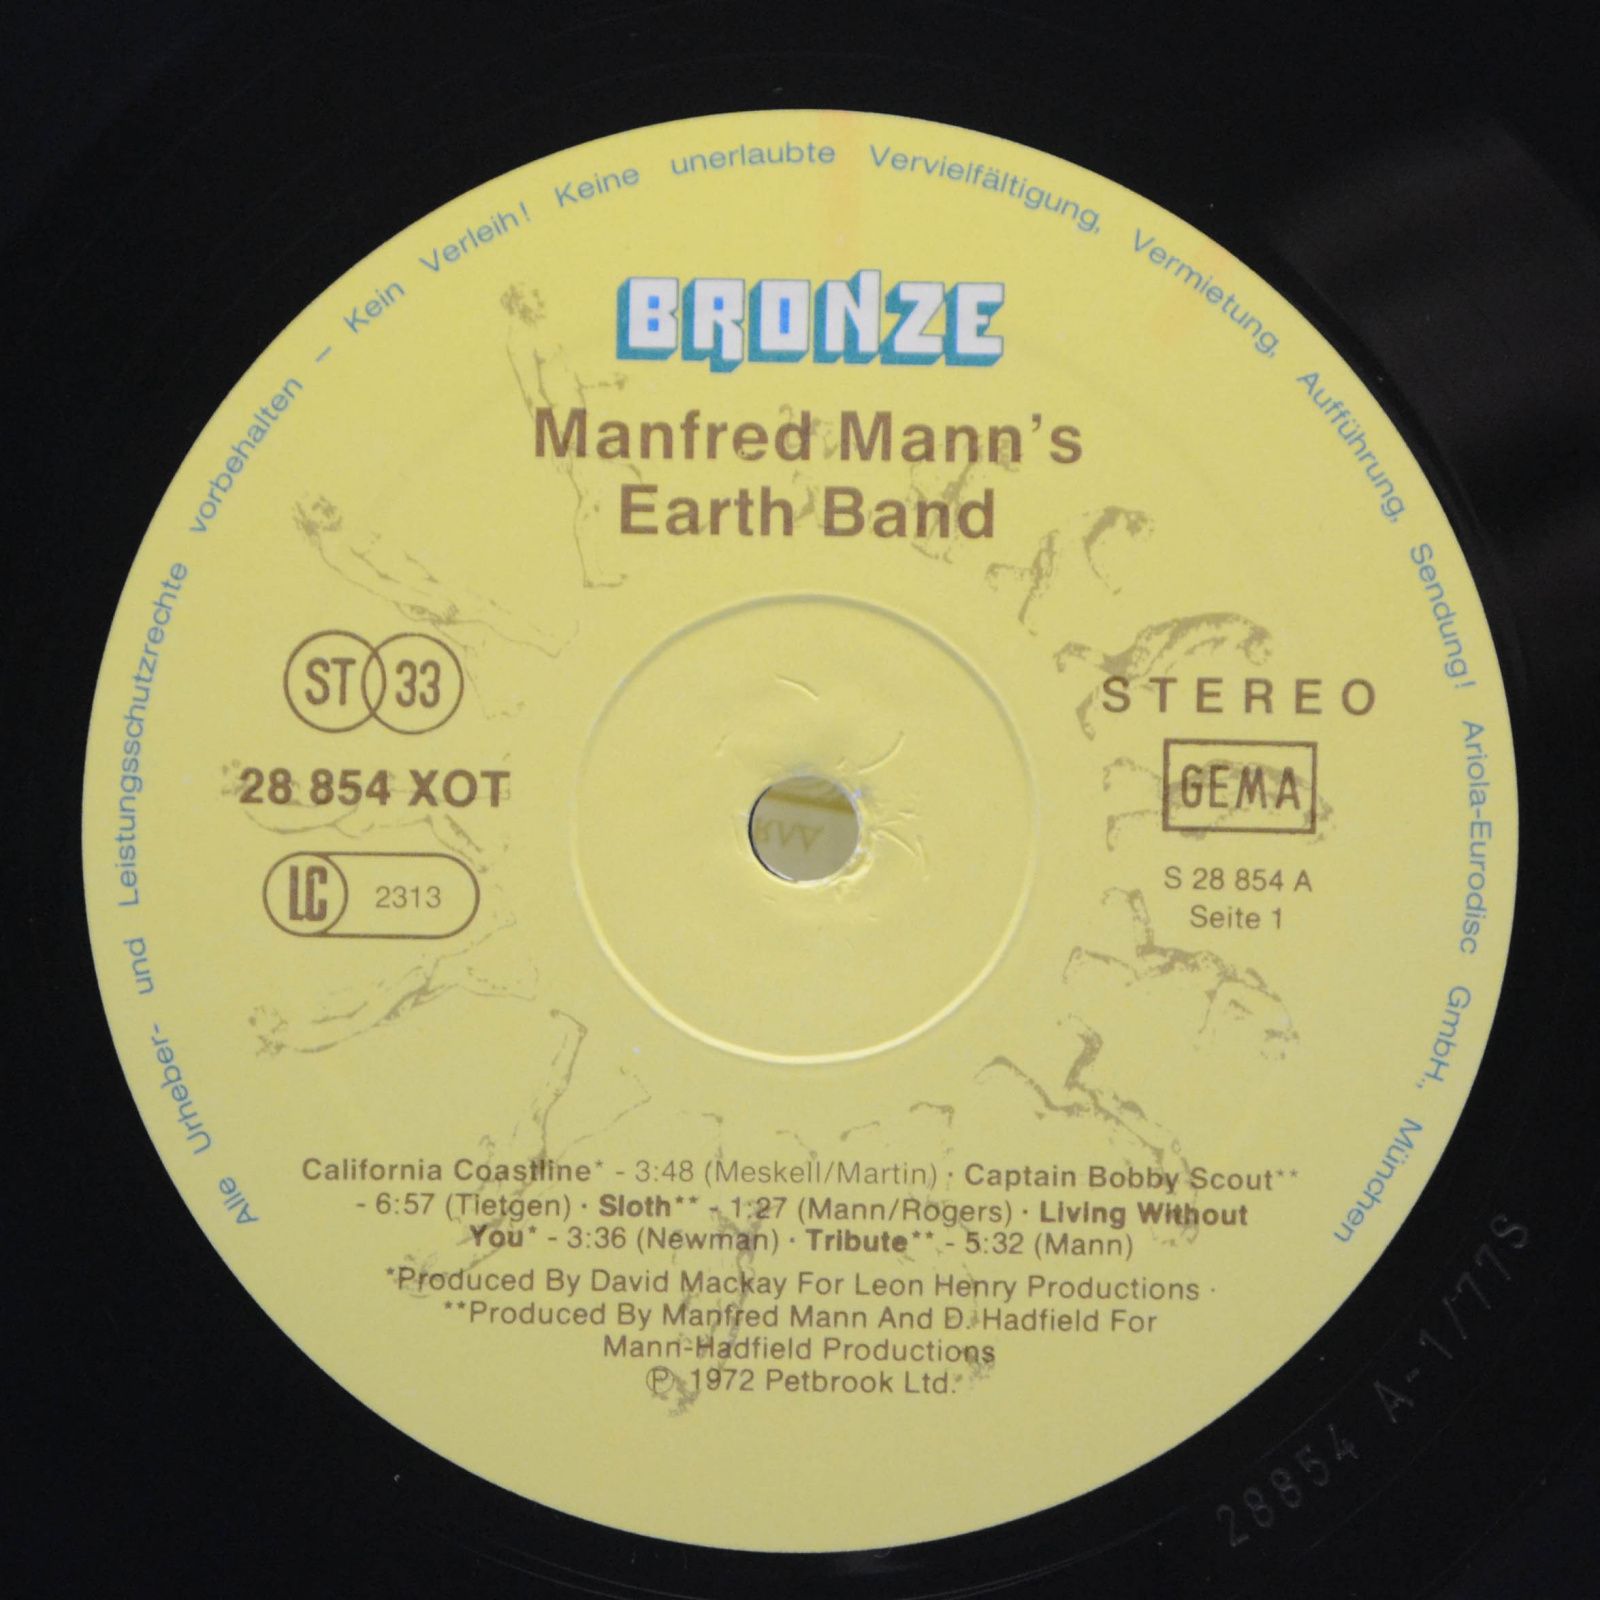 Manfred Mann's Earth Band — Manfred Mann's Earth Band, 1972